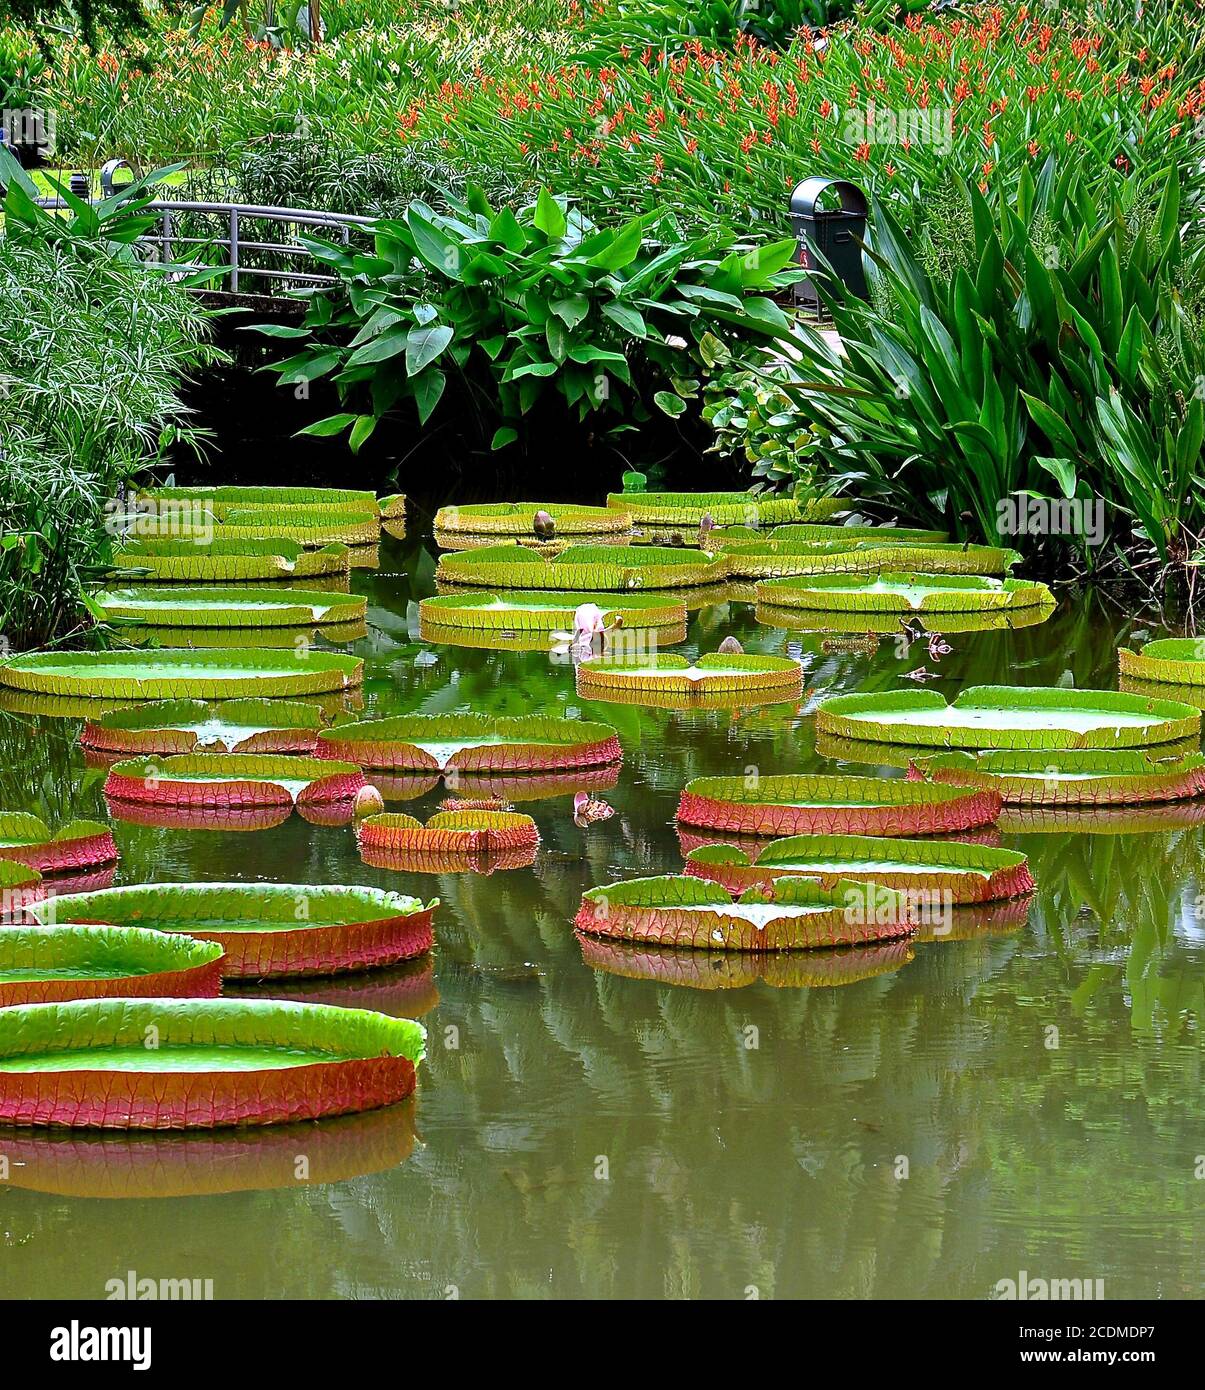 Scène calme du parc montrant de grandes feuilles de lotus flottant dans un étang, entouré d'une végétation luxuriante. Le pont lui donne l'apparence d'un tableau de Monet. Banque D'Images